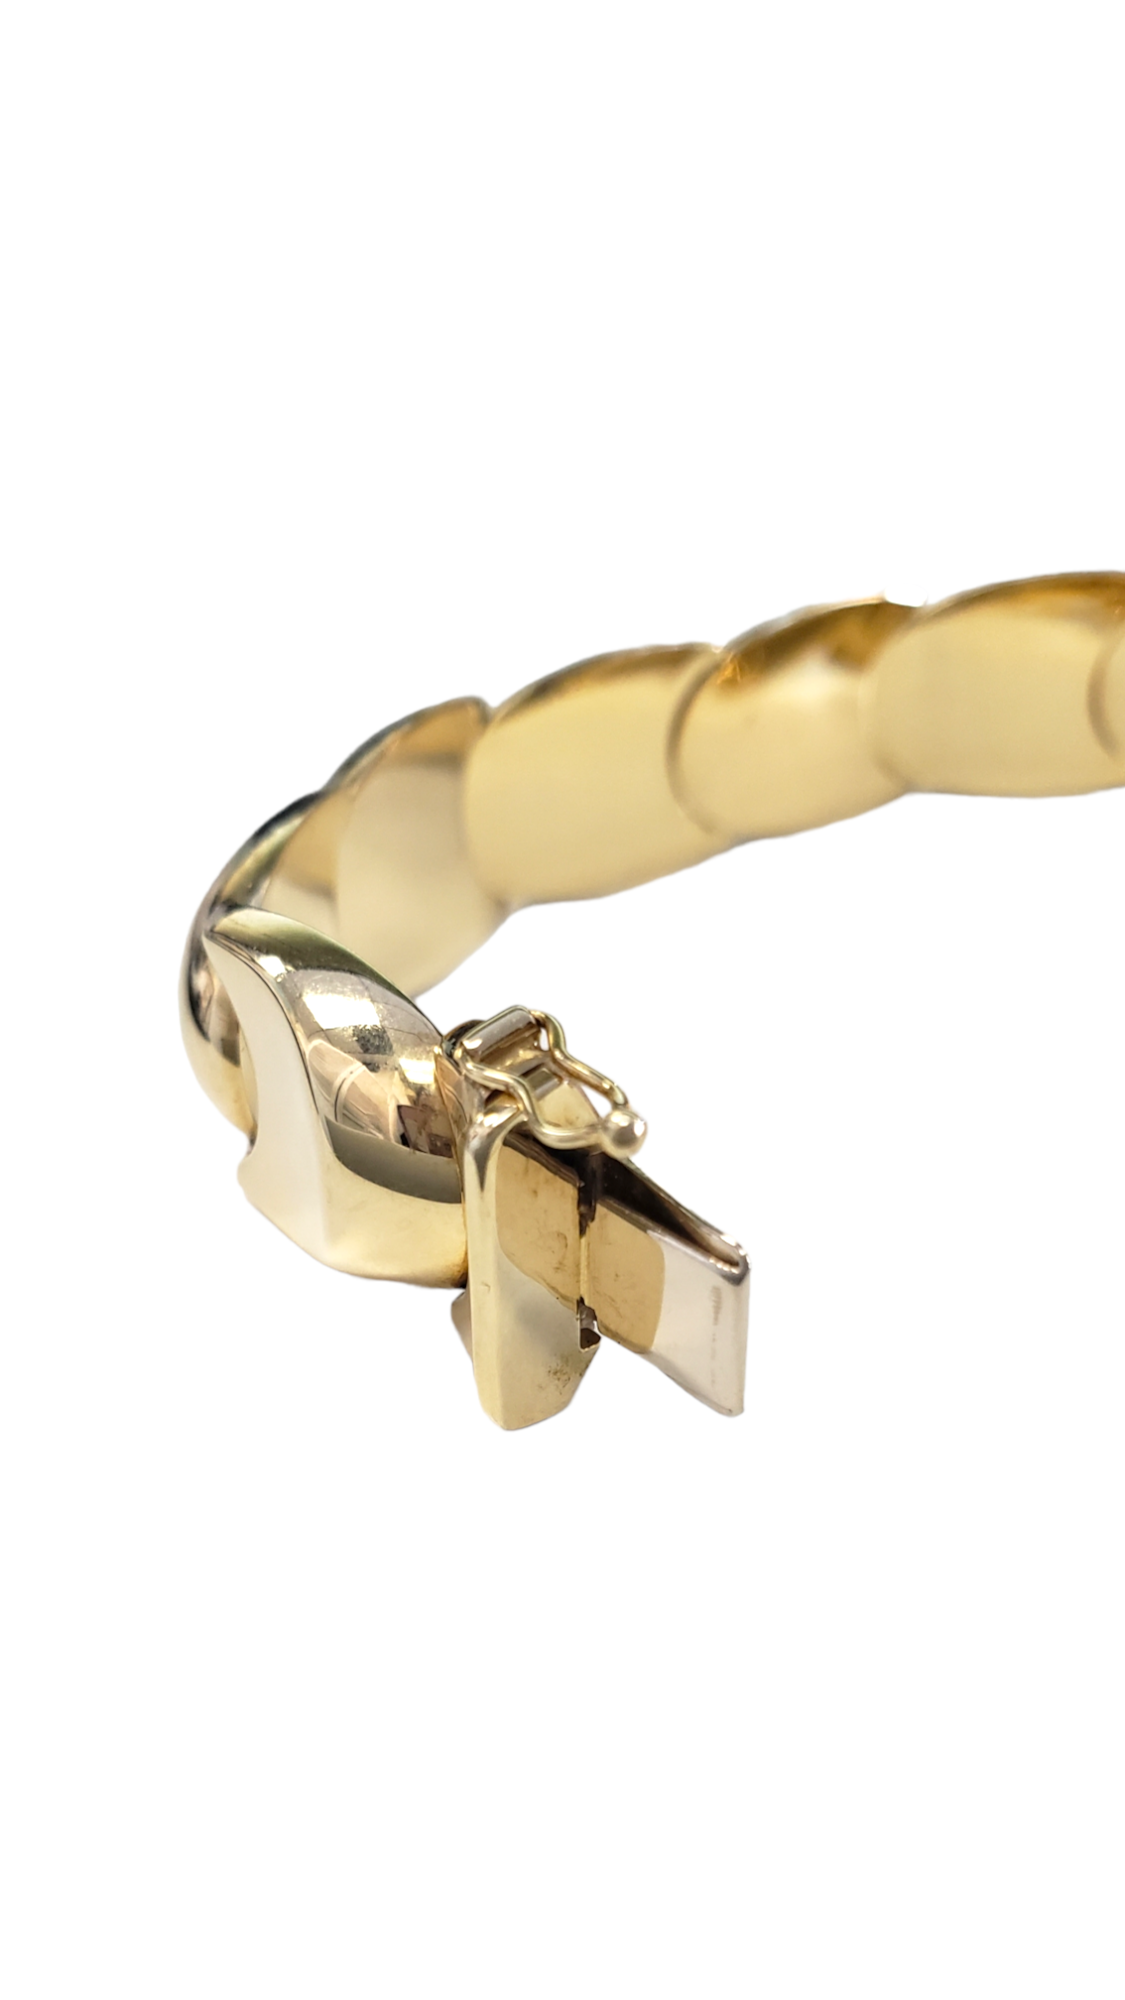 Fancy U-Shaped Link Bracelet made in 14-Karat Yellow Gold